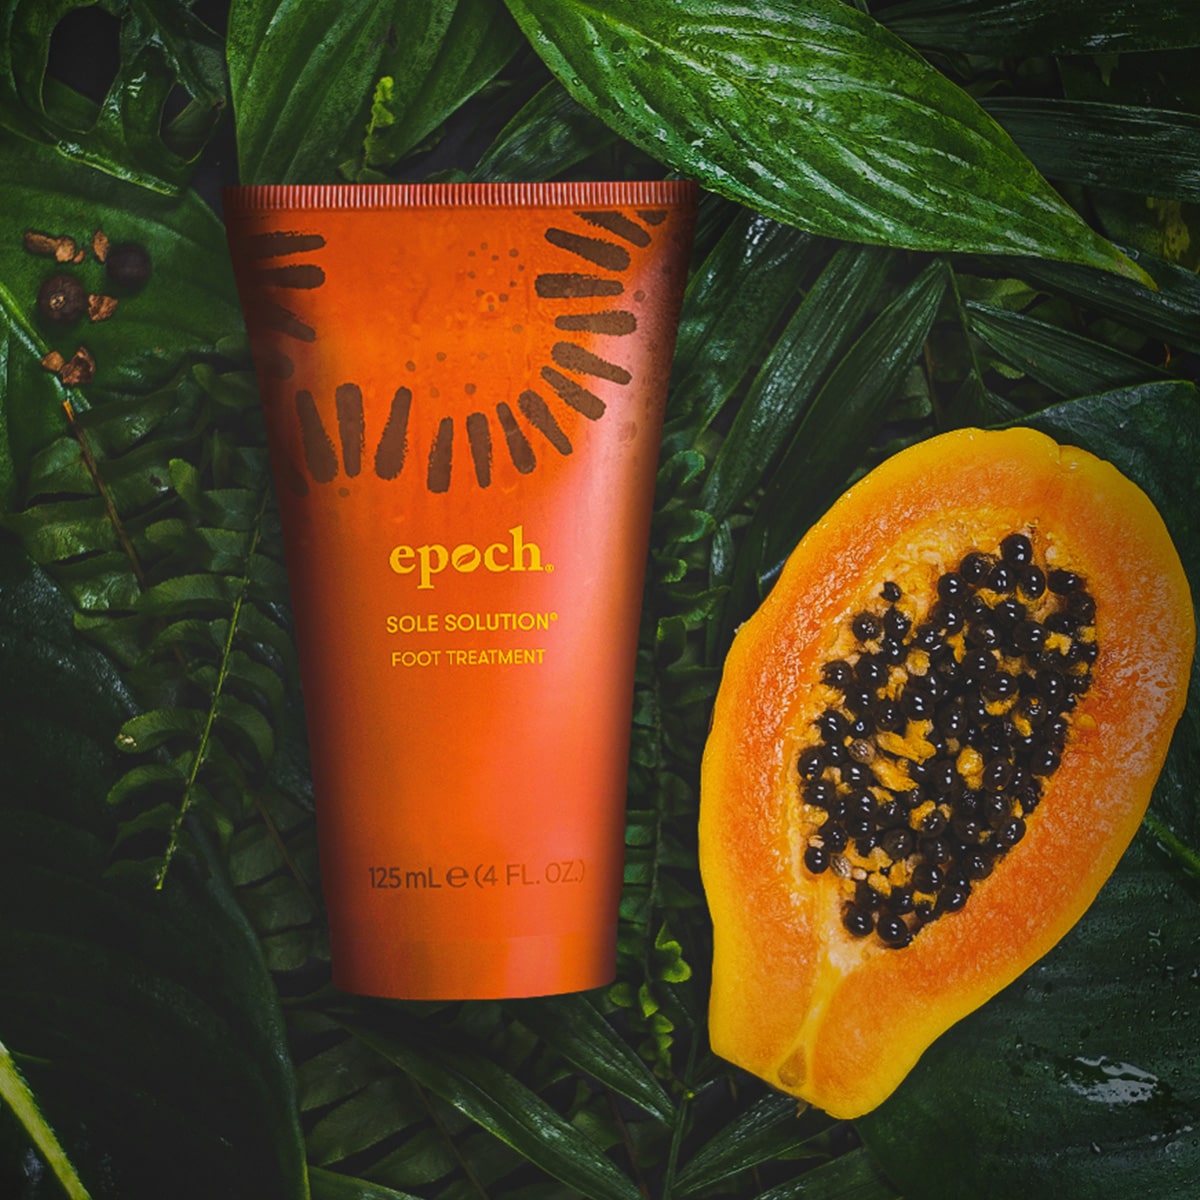 Epoch Sole Solution von NuSkin (125ml) liegt zusammen mit aufgeschnittener Papaya auf dunkelgrünem feuchten Farn.